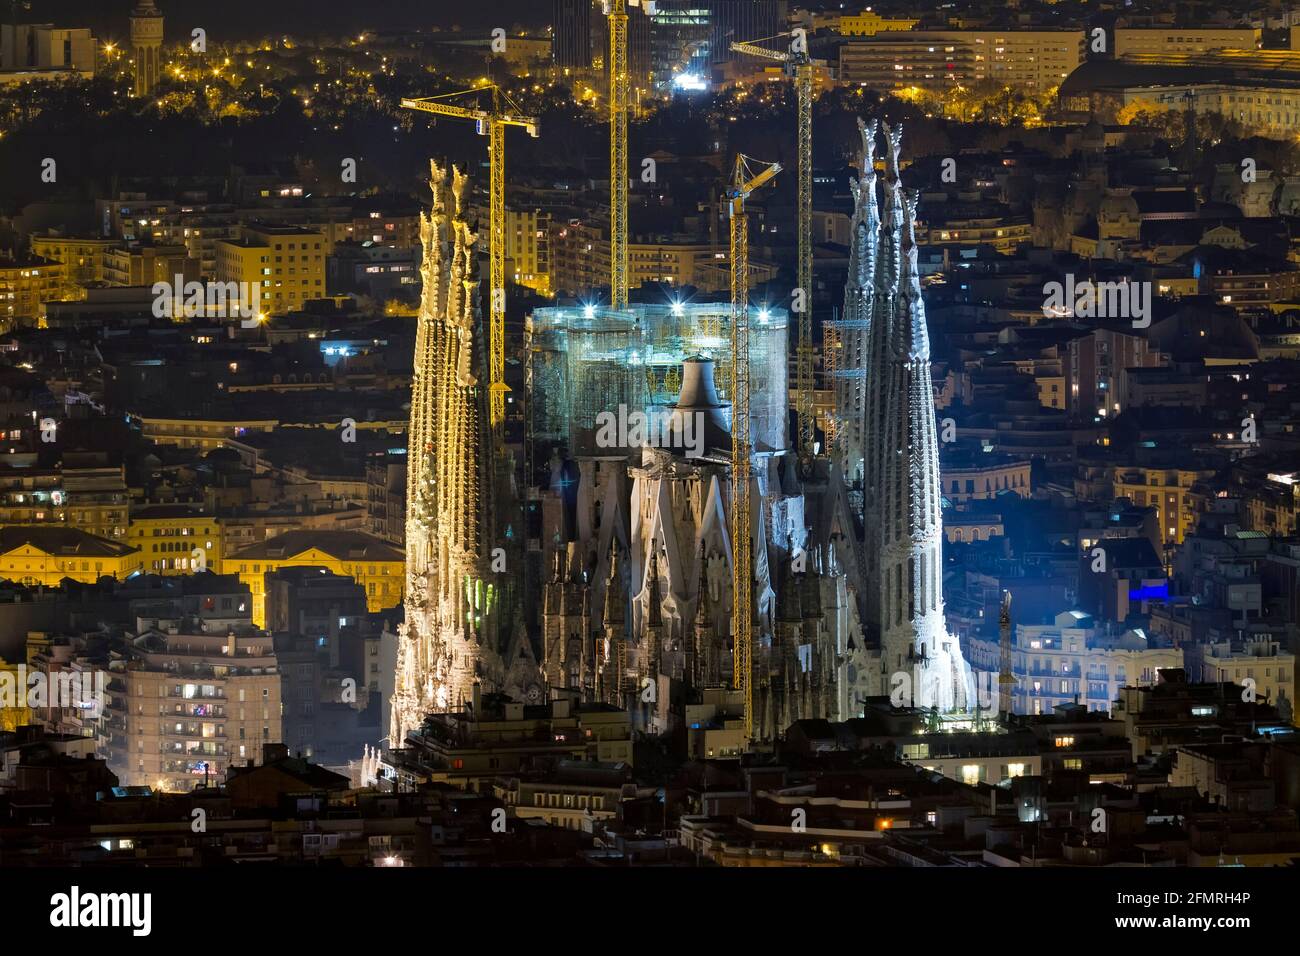 BARCELONA - 26 de diciembre: La Sagrada Familia iluminada por la noche, la catedral diseñada por Antoni Gaudí, que se está construyendo desde el año 1 Stock Photo